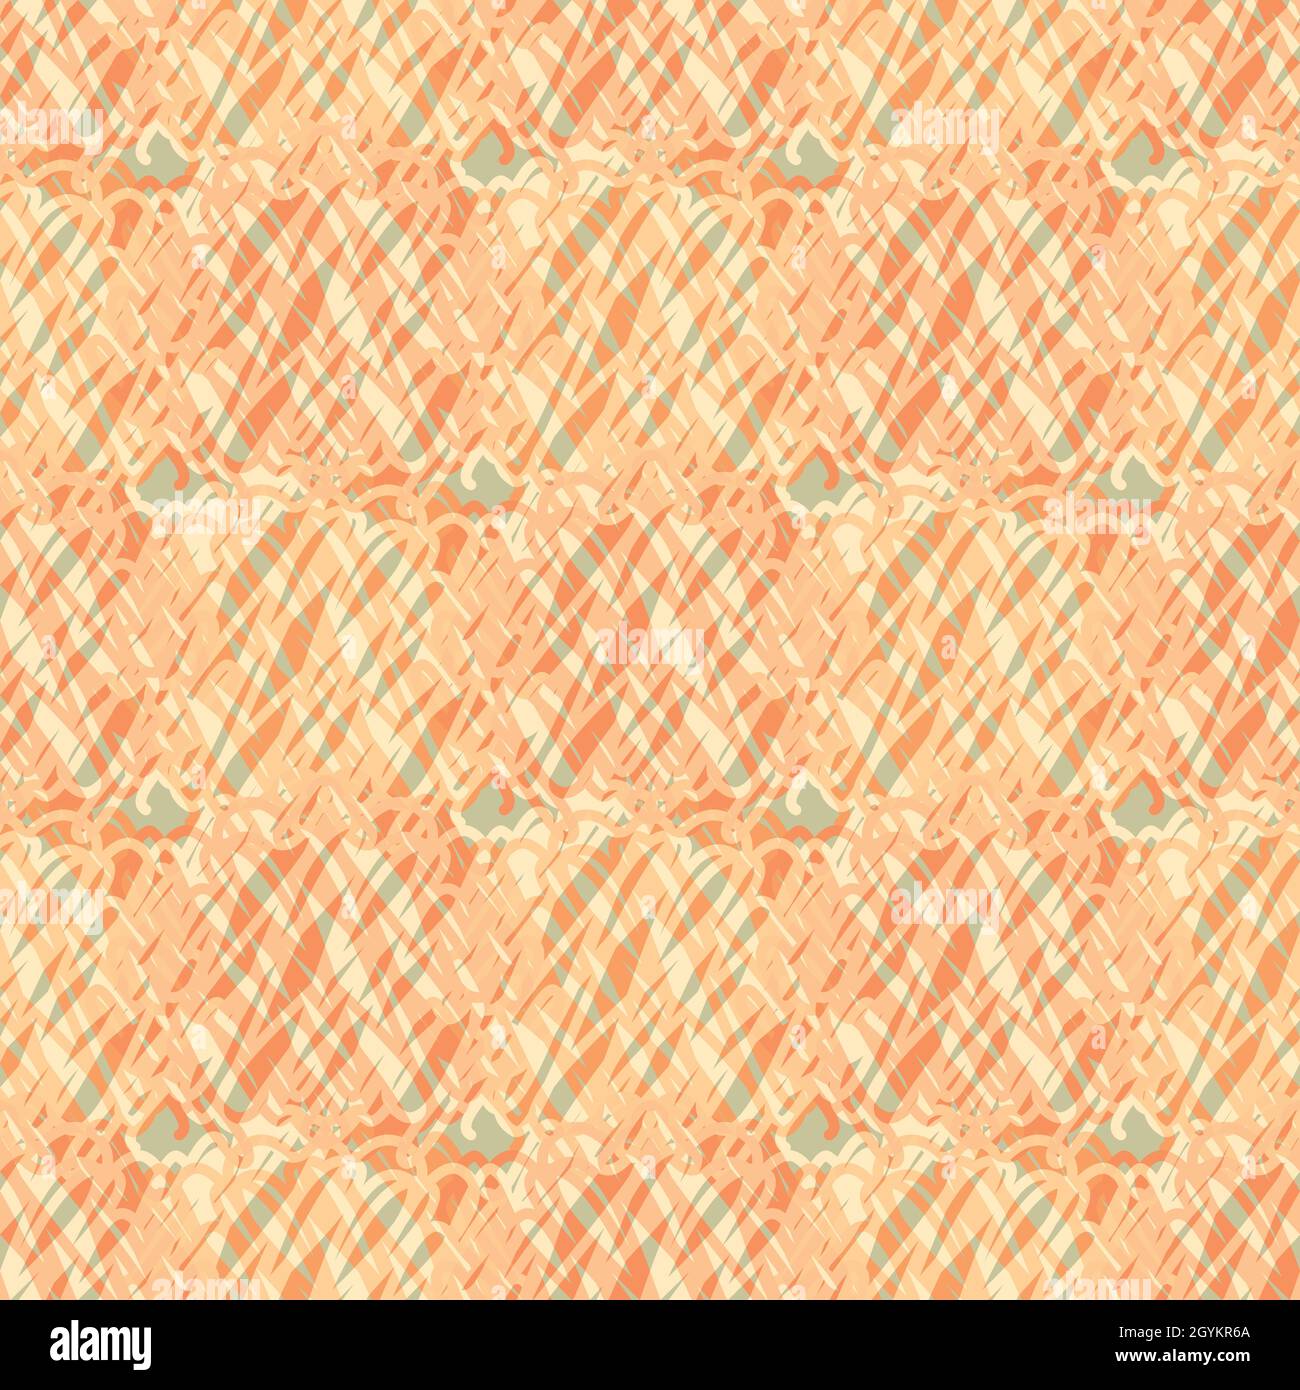 Abstrakt gestrickt Vektor Muster Textur Hintergrund. Orangefarbener Hintergrund mit unregelmäßigen Schleifen aus Häkelgarn. REPEAT mit gekritzelter Struktur Stock Vektor